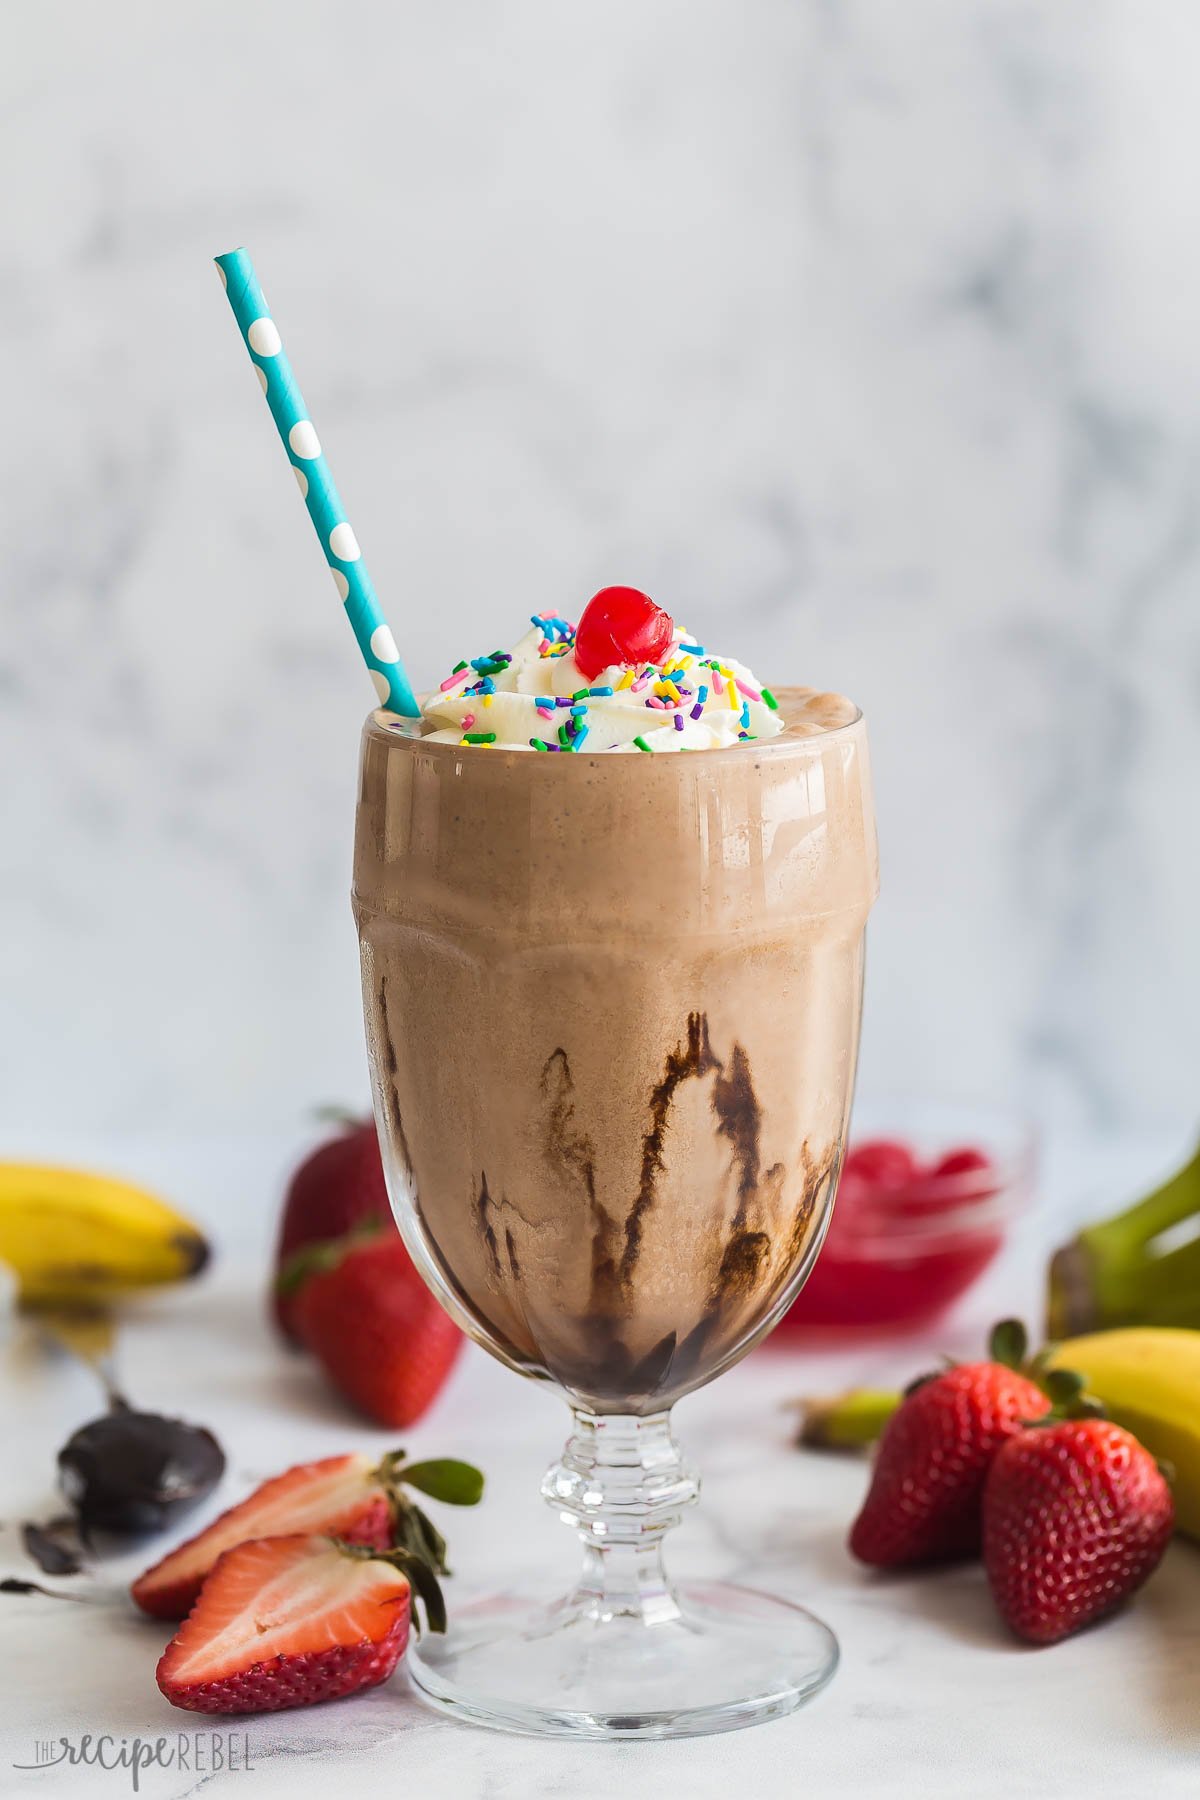 Chocolate Milkshake (3 ingredients!) - The Recipe Rebel